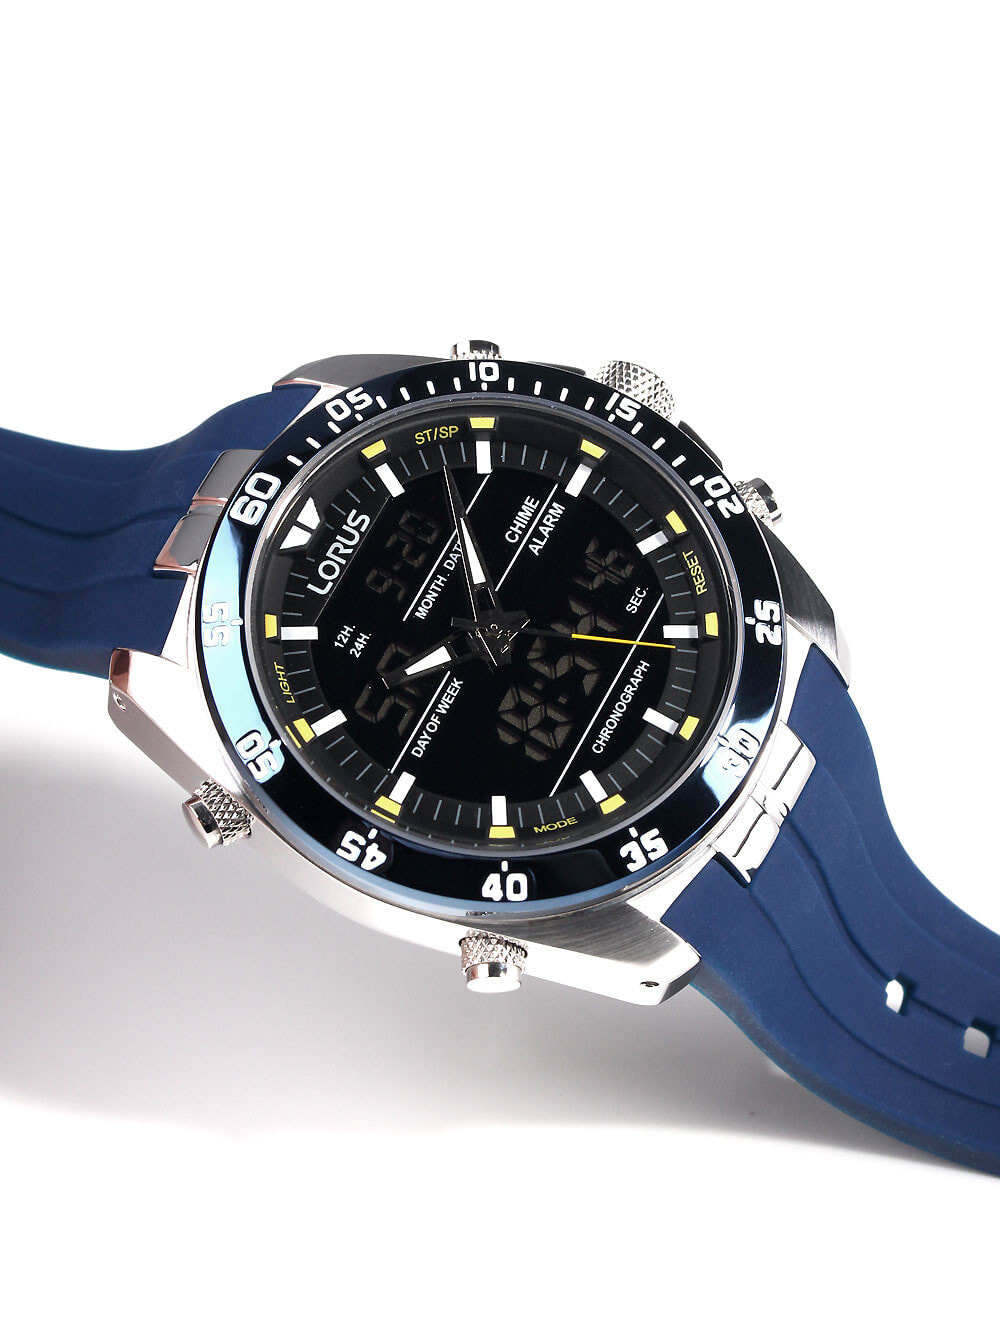 Мужские наручные часы с синим силиконовым ремешком Lorus RW617AX9  Analog-Digital Alarm Chronograph 100M 46mm — купить недорого с доставкой,  6761219